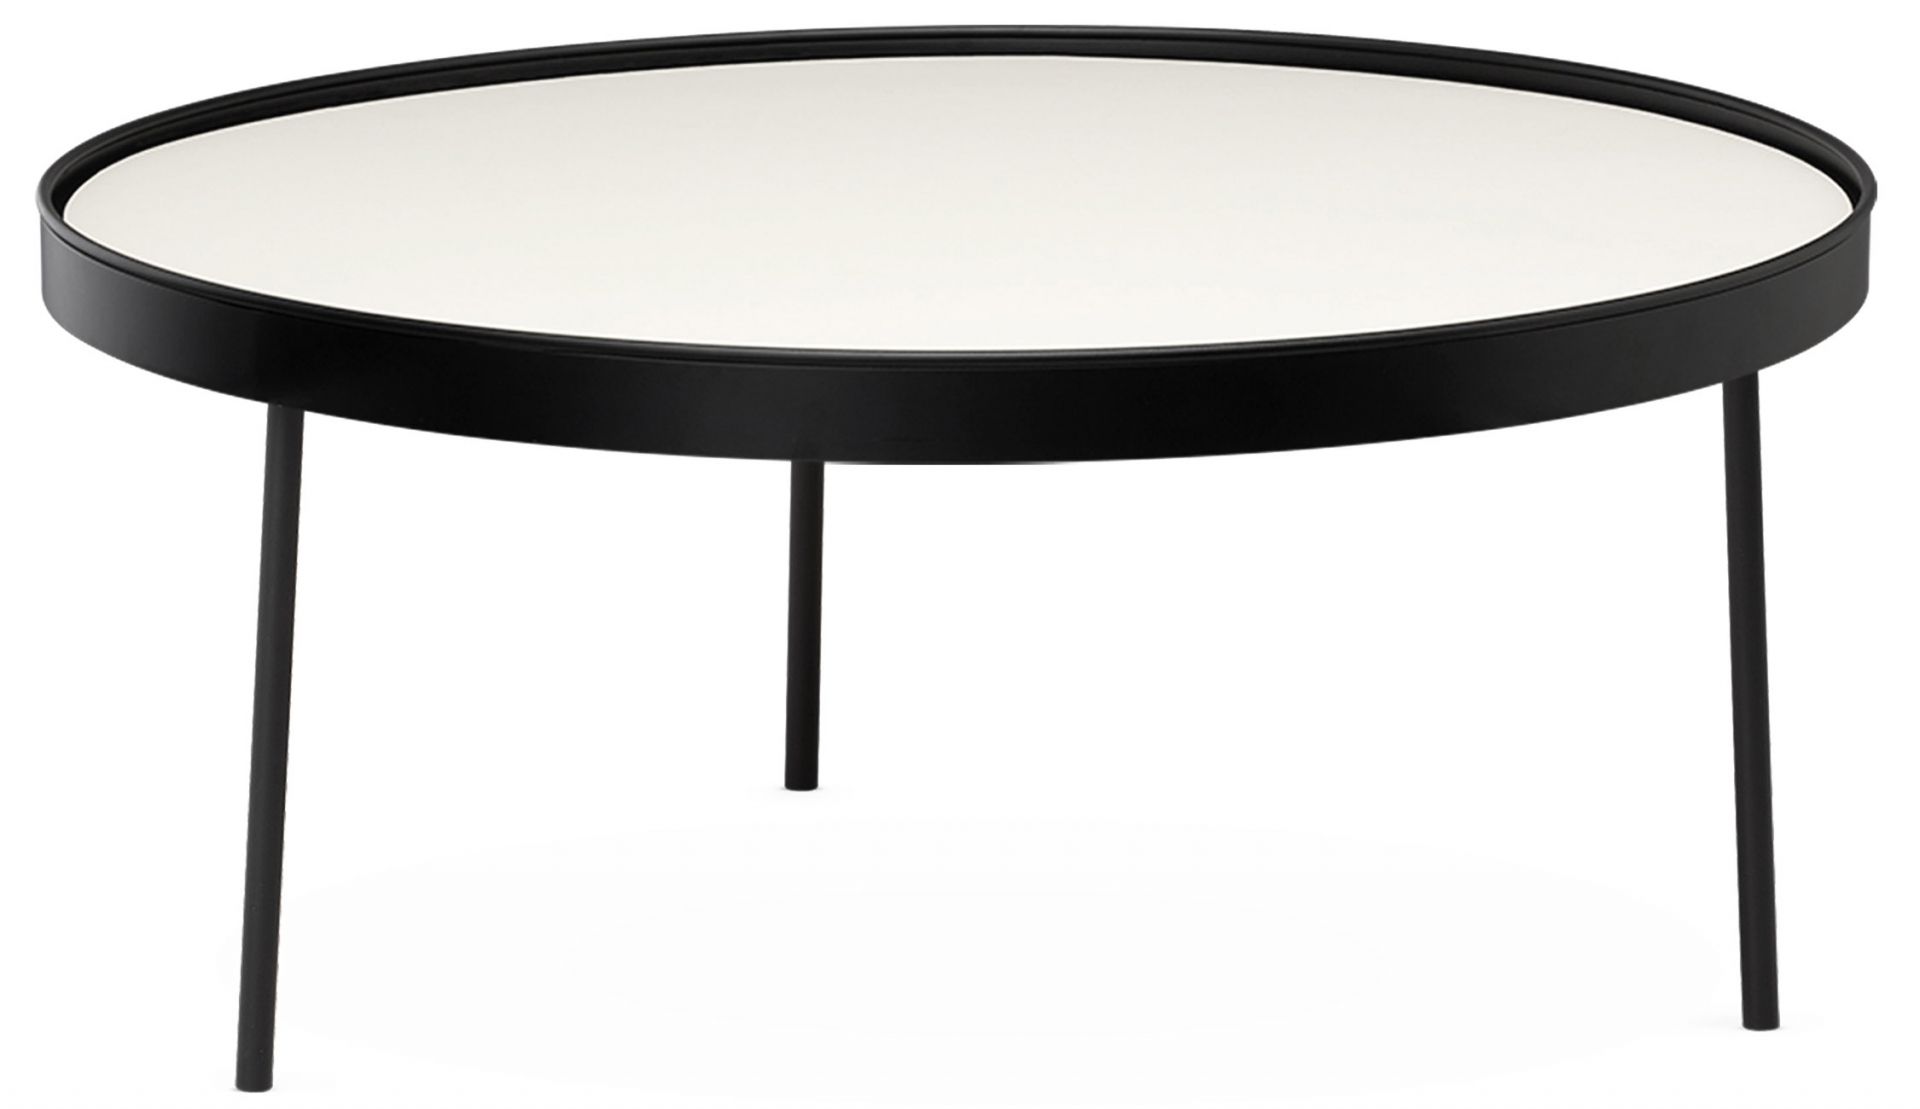 Northern designové konferenční stoly Stilk (průměr 74 cm) - DESIGNPROPAGANDA